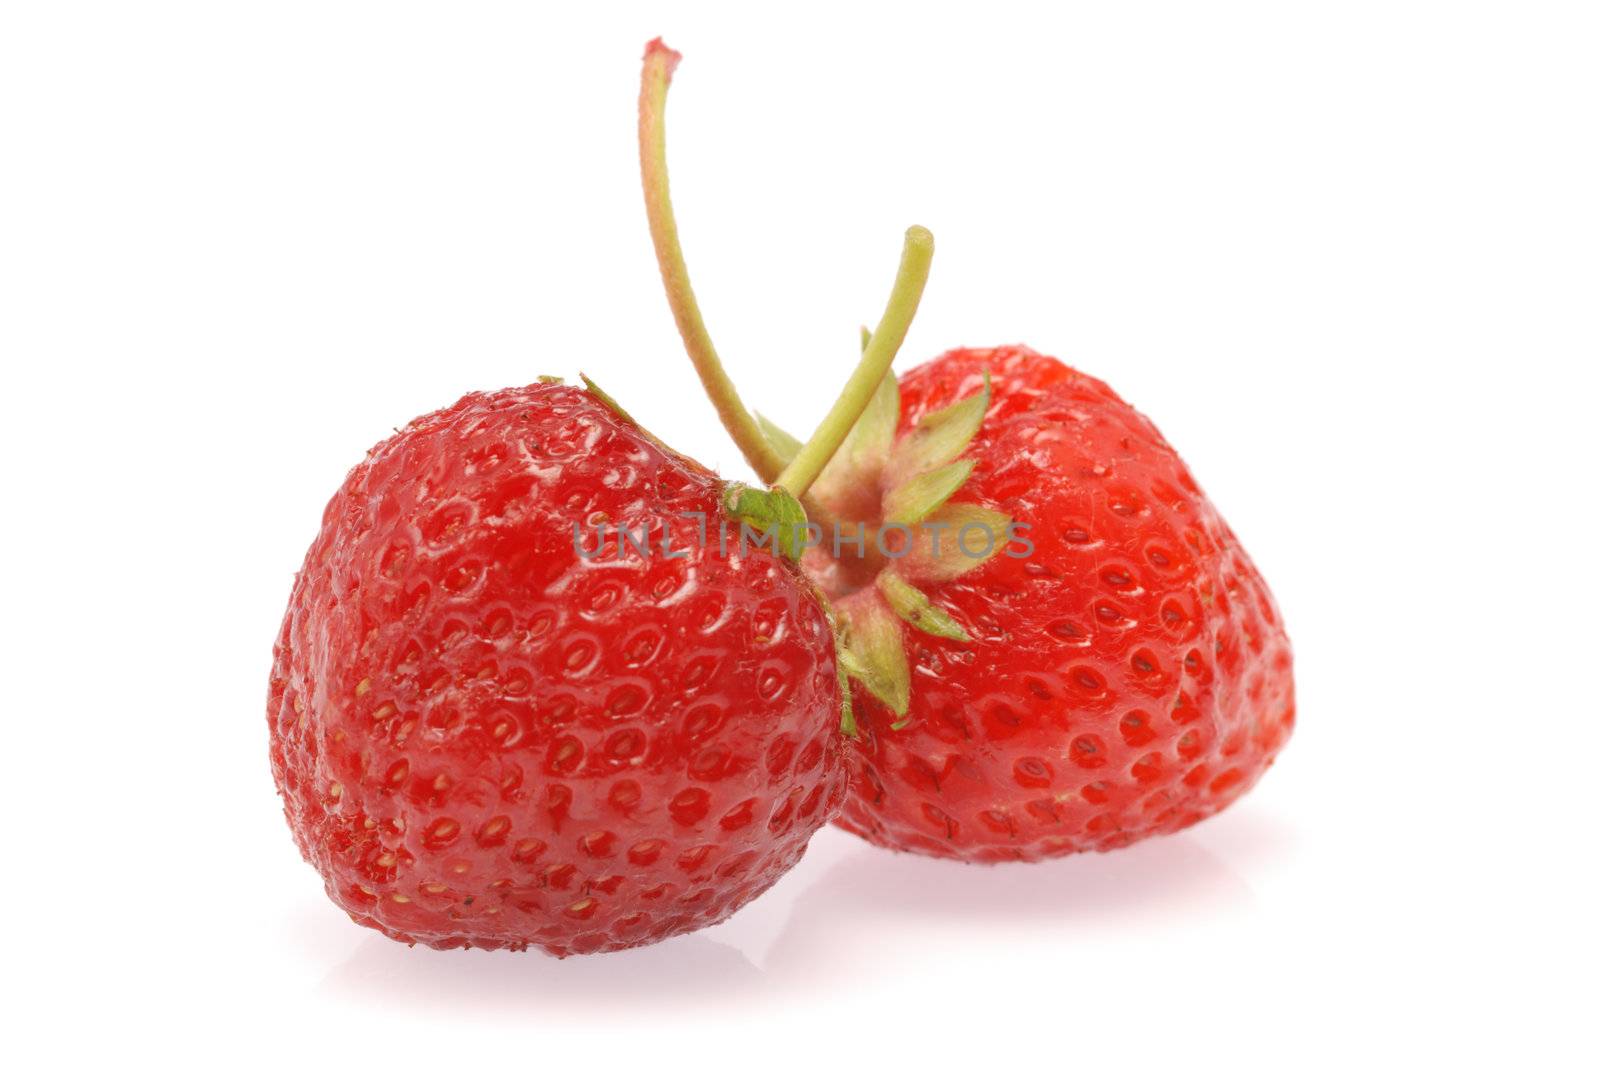 Strawberry by galdzer